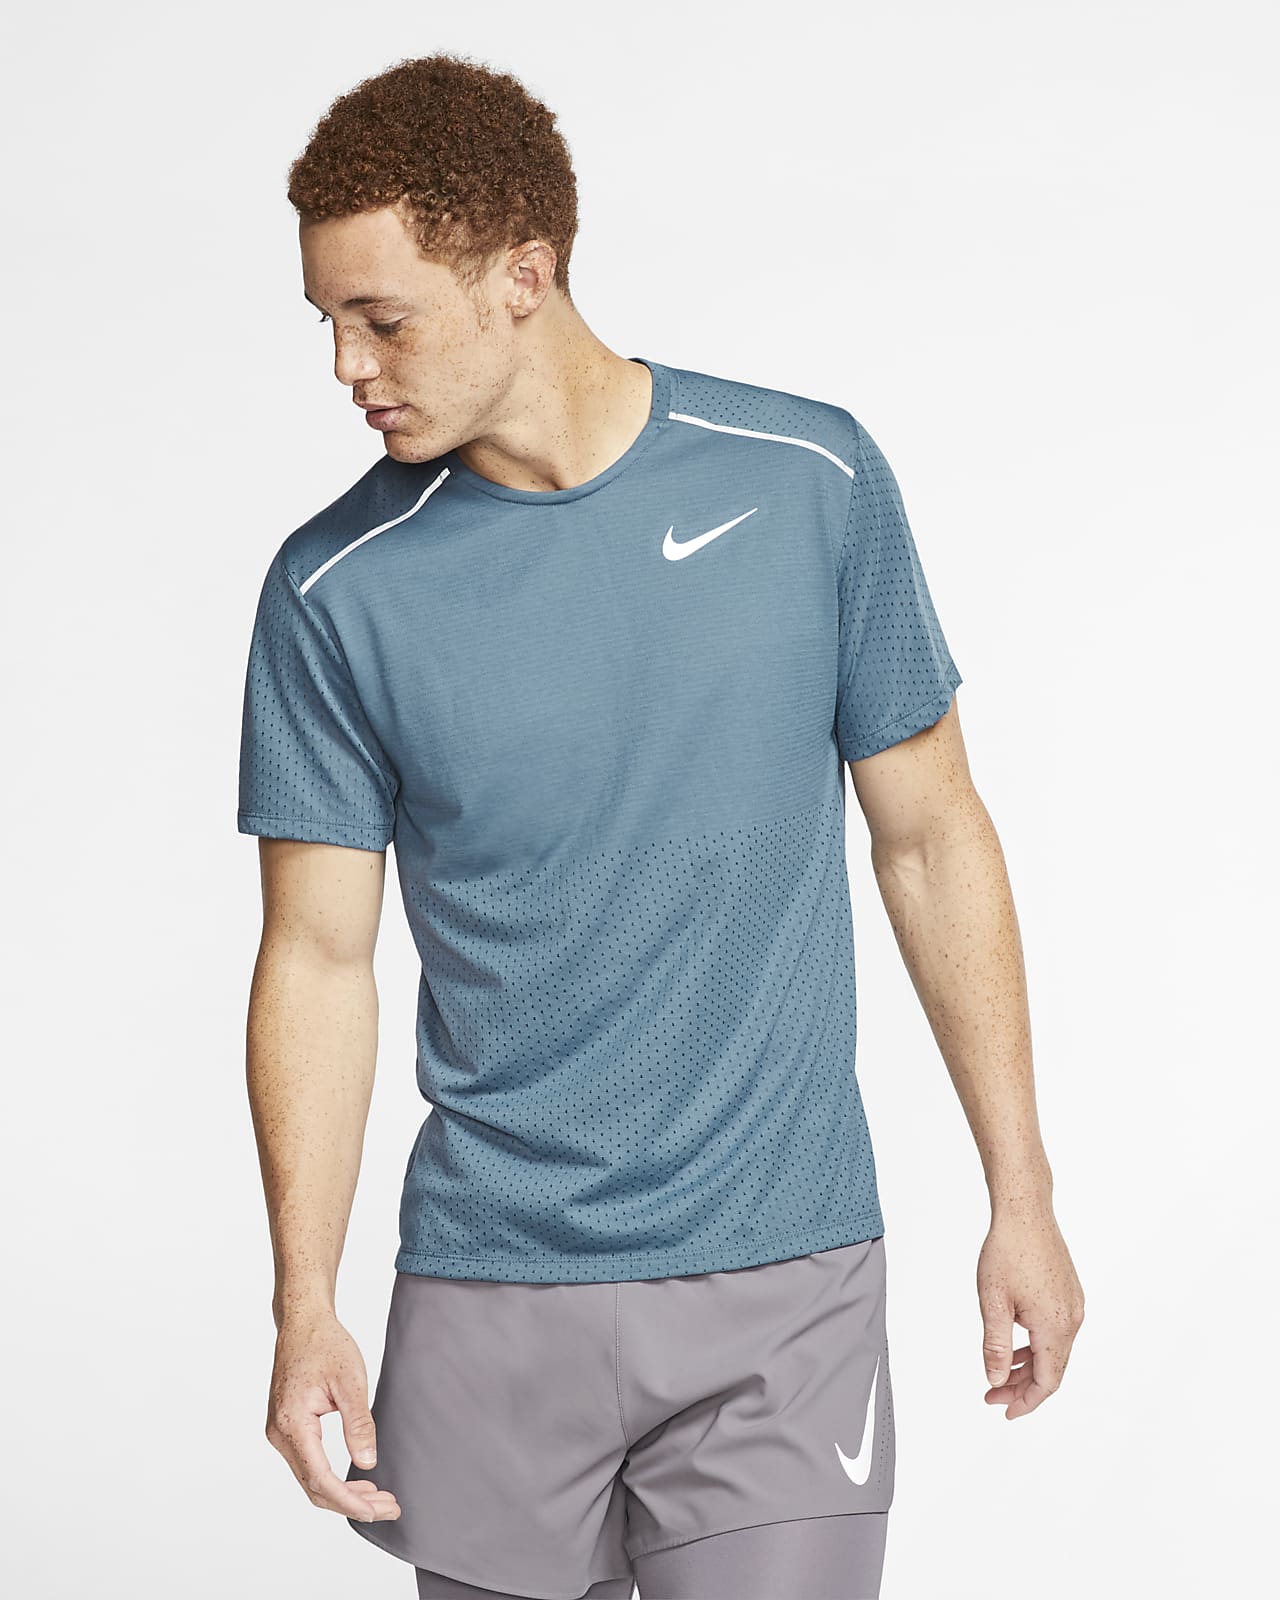 Nike Rise 365 Men's Short-Sleeve Running Top.